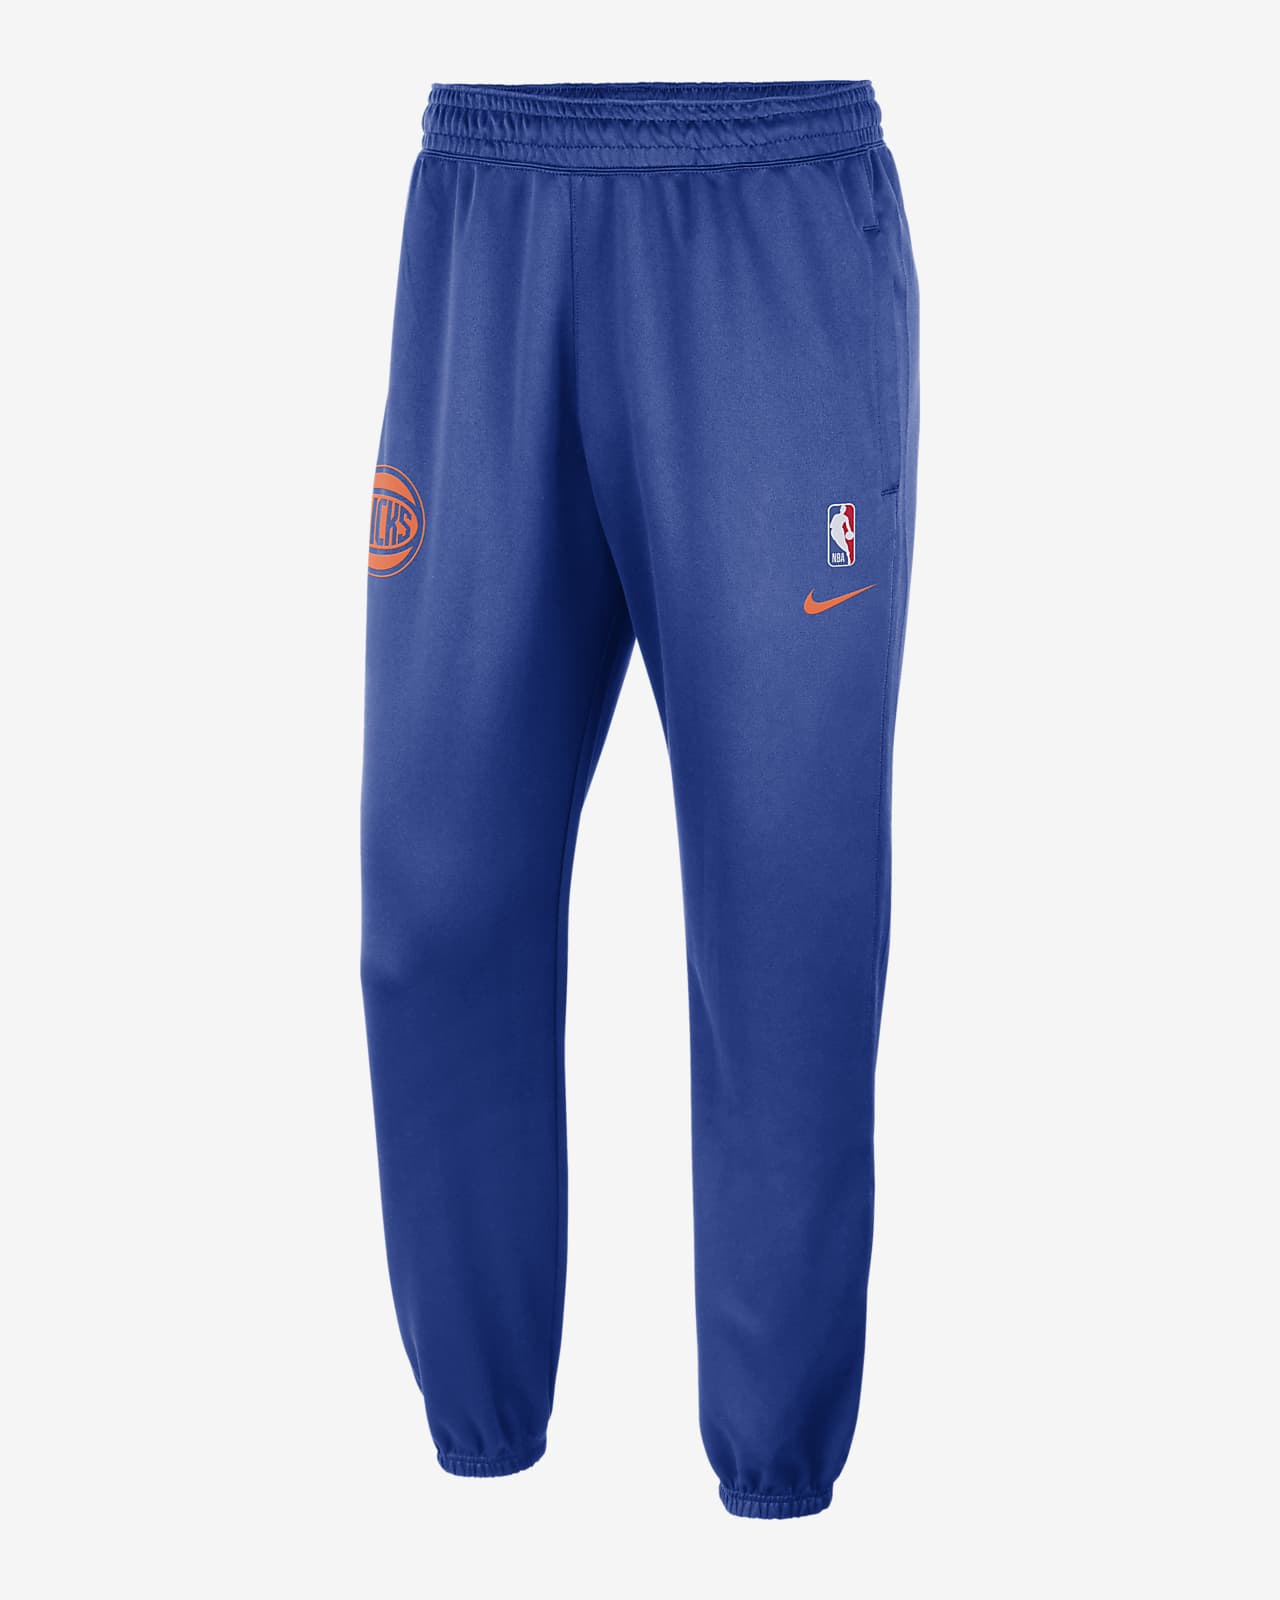 New York Knicks Mens Pajamas & Underwear, Knicks Pajamas